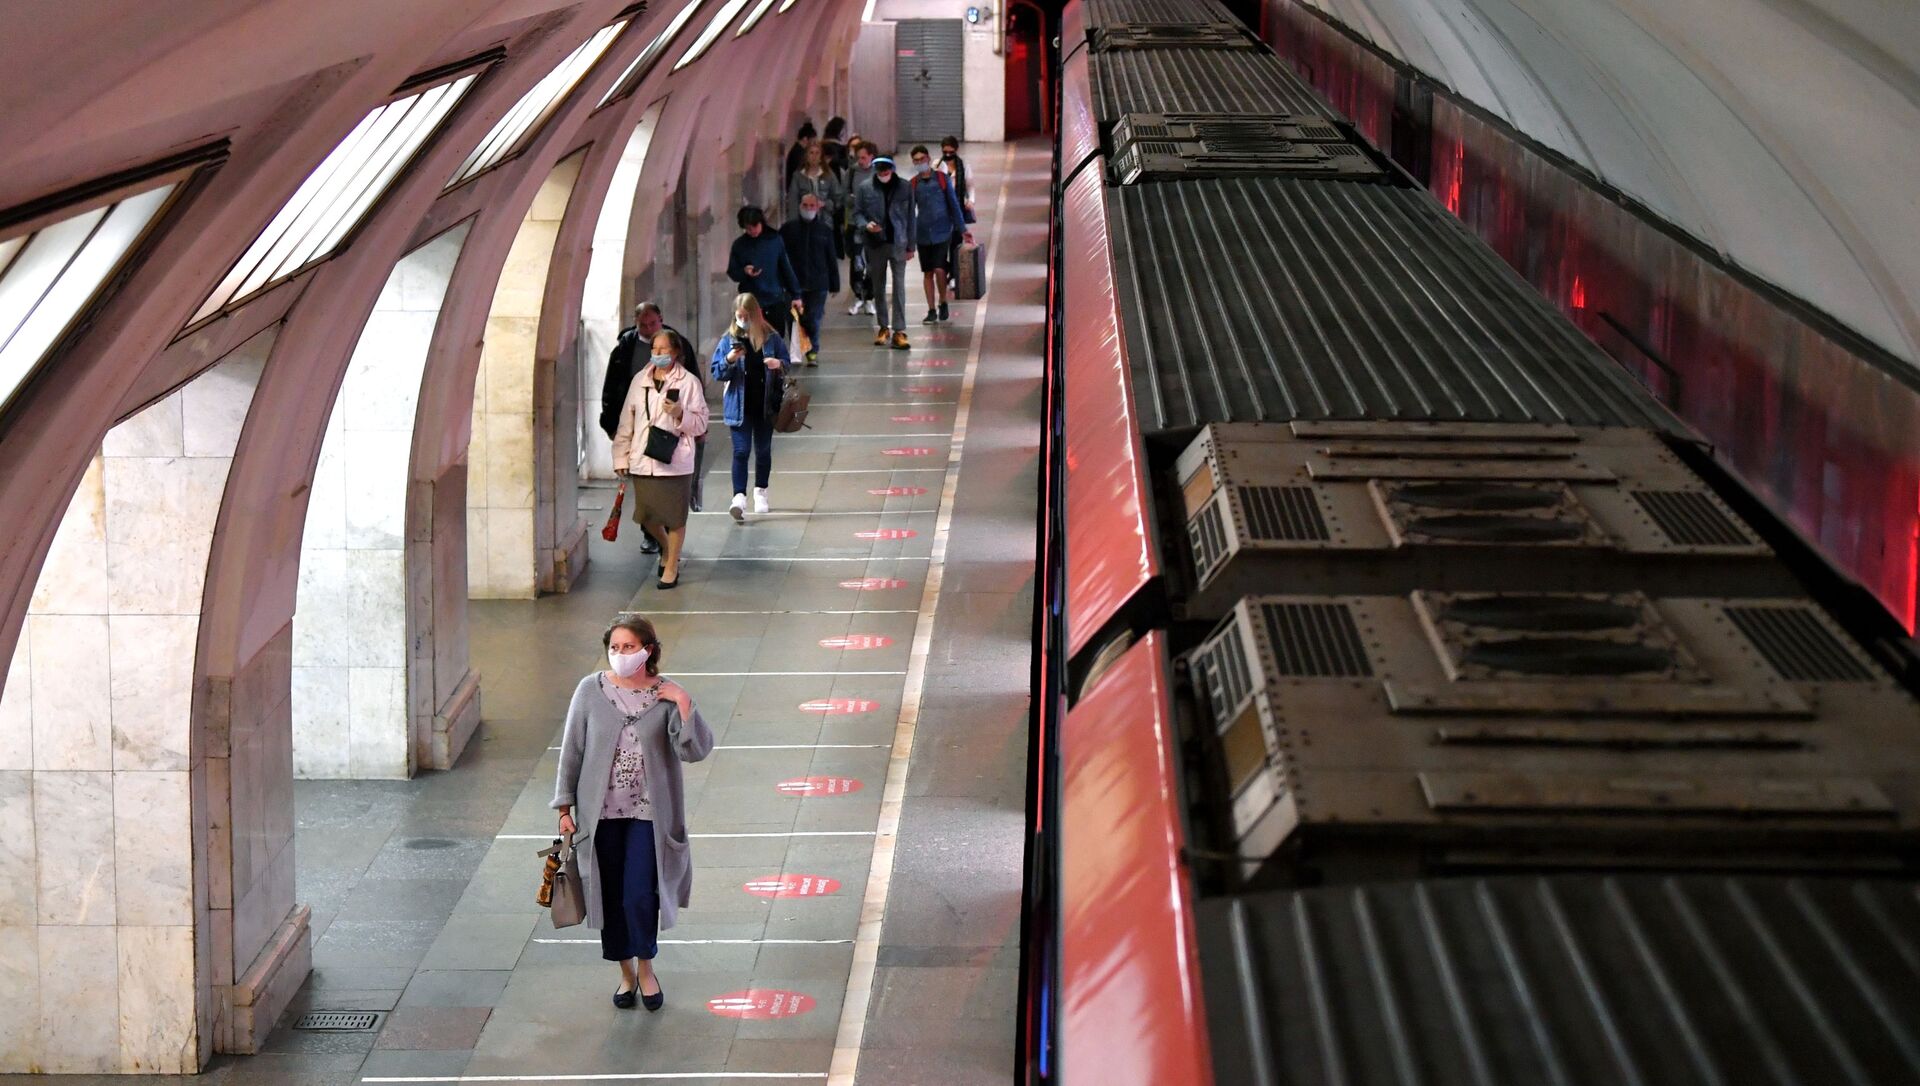 Le métro de Moscou pendant la pandémie de Covid-19 (10 juin 2021) - Sputnik Afrique, 1920, 12.06.2021